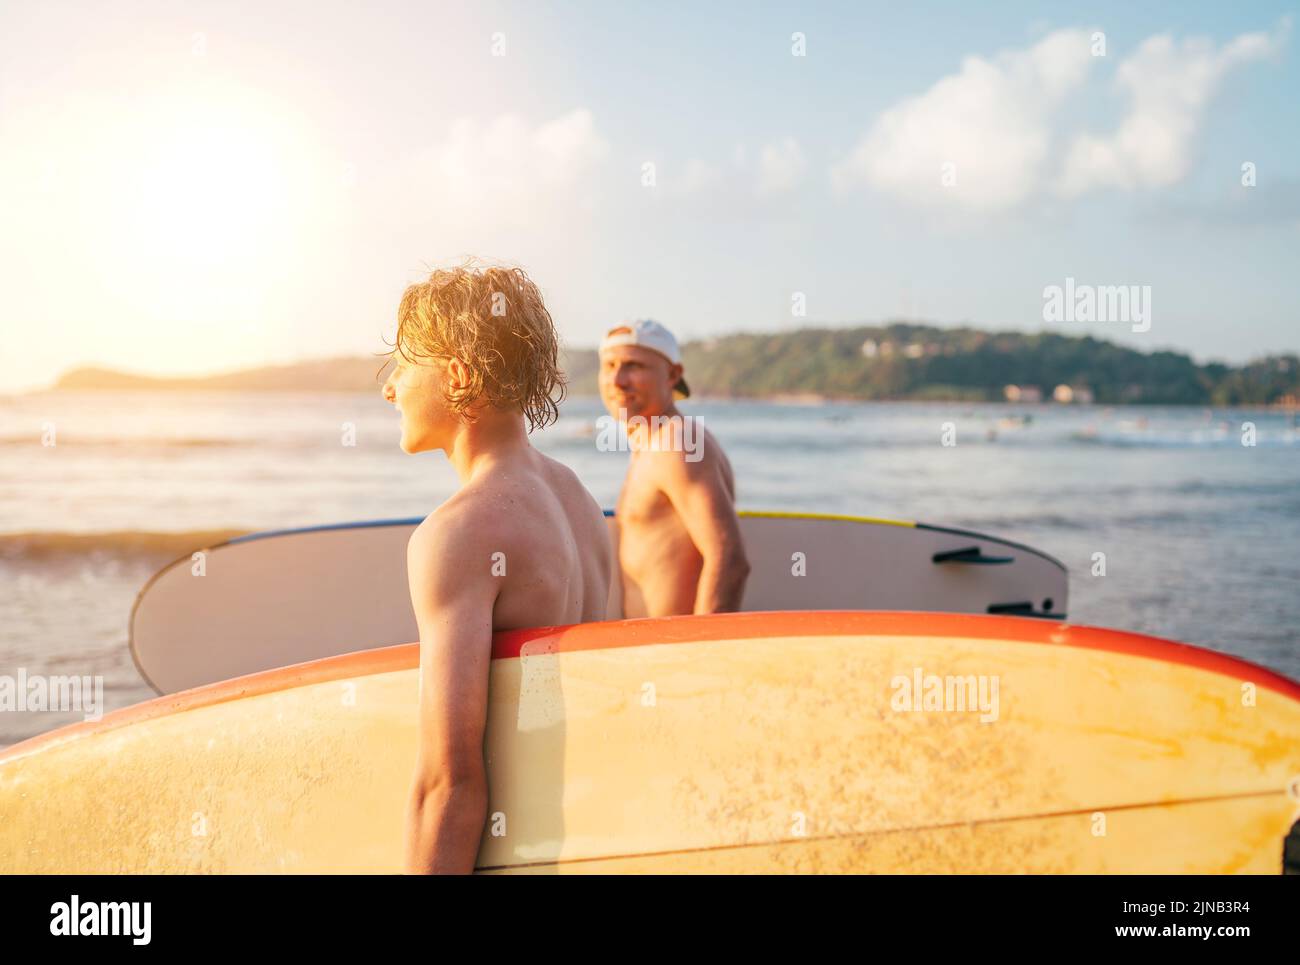 Teen boy mit Surfbrett gehen zum Meer zum Surfen mit Vater auf Sri Lanka Insel. Sie haben einen Winterurlaub und genießen einen schönen Sonnenuntergang Licht F Stockfoto